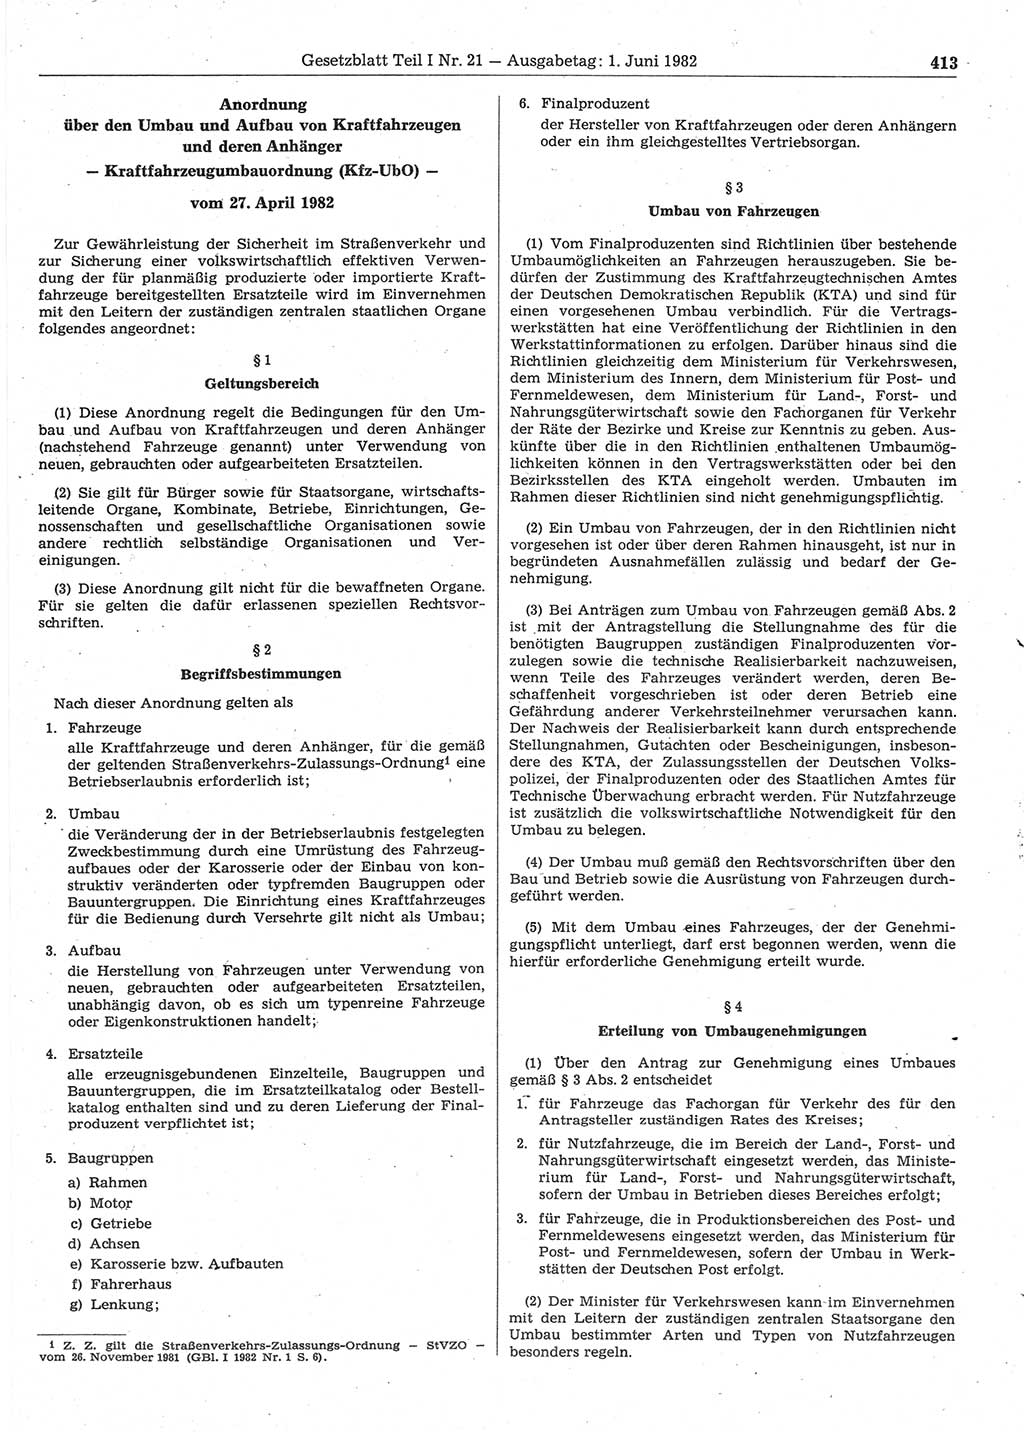 Gesetzblatt (GBl.) der Deutschen Demokratischen Republik (DDR) Teil Ⅰ 1982, Seite 413 (GBl. DDR Ⅰ 1982, S. 413)